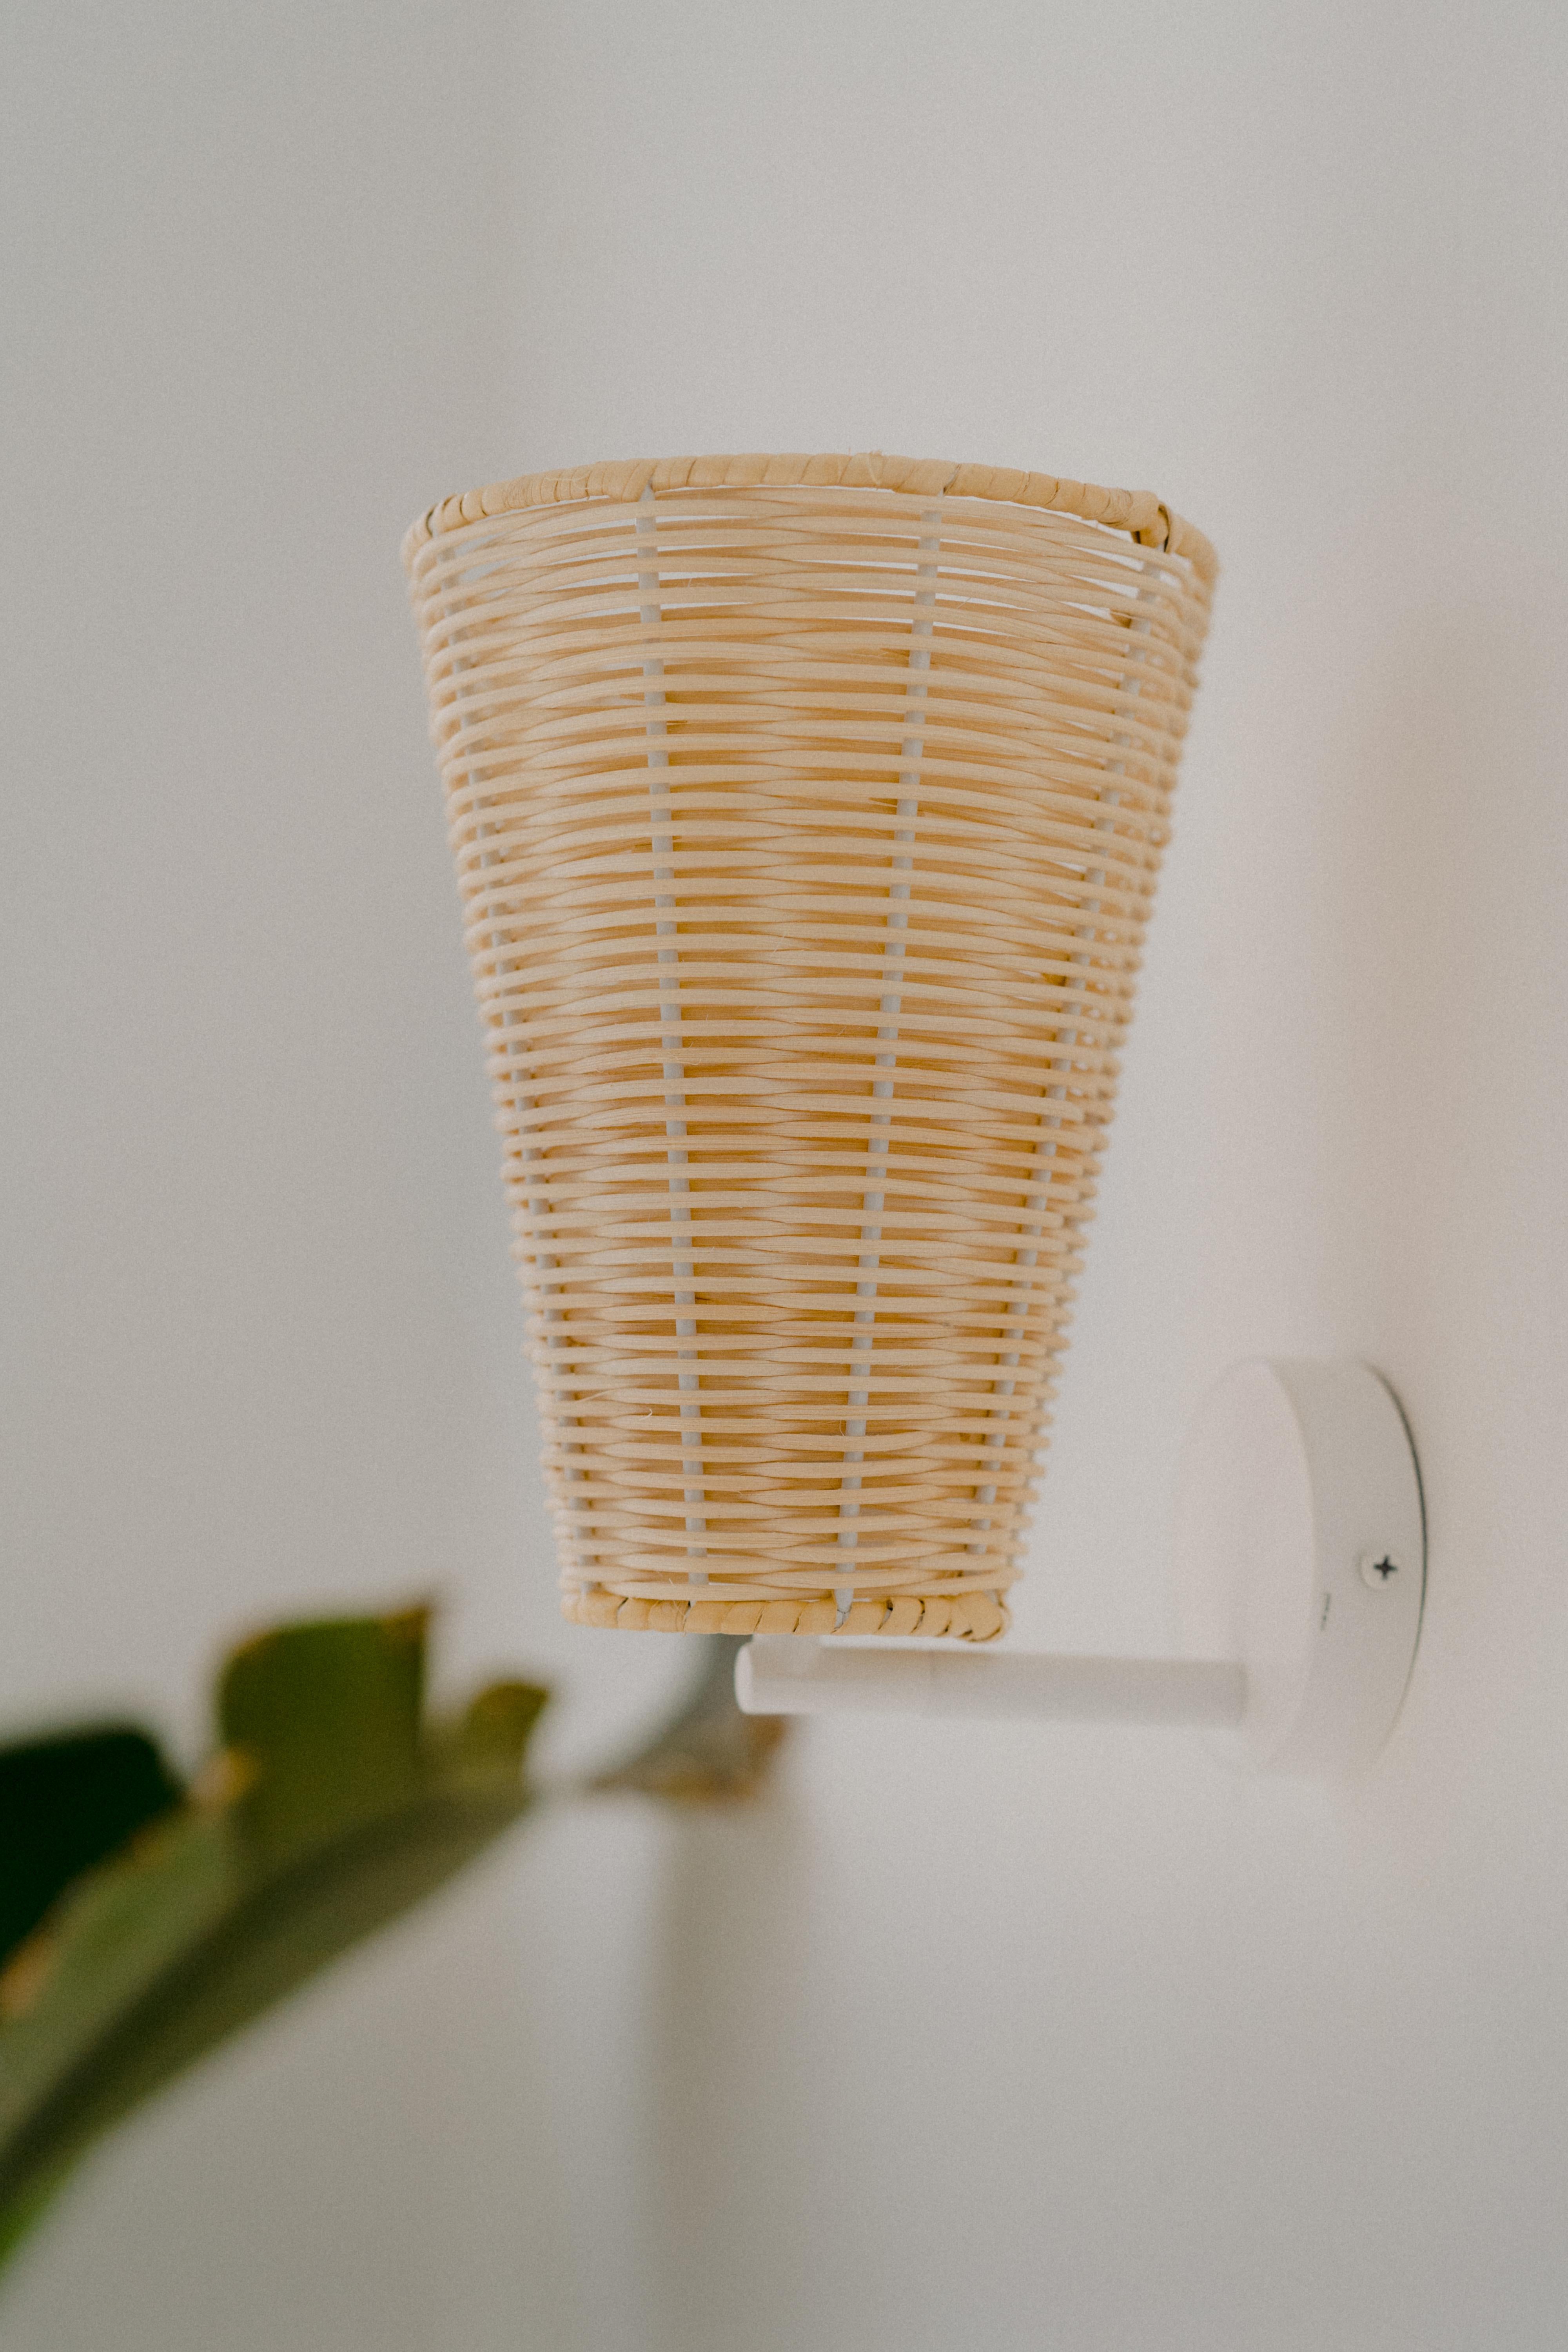 Die Costa-Kollektion mit einfachen Lampen in kleinen Größen wurde entwickelt, um den Räumen einen natürlichen und einfachen Touch zu verleihen.
Alle wurden von Mediterranean Objects entworfen und werden von uns in Barcelona handgefertigt.
Geflochten